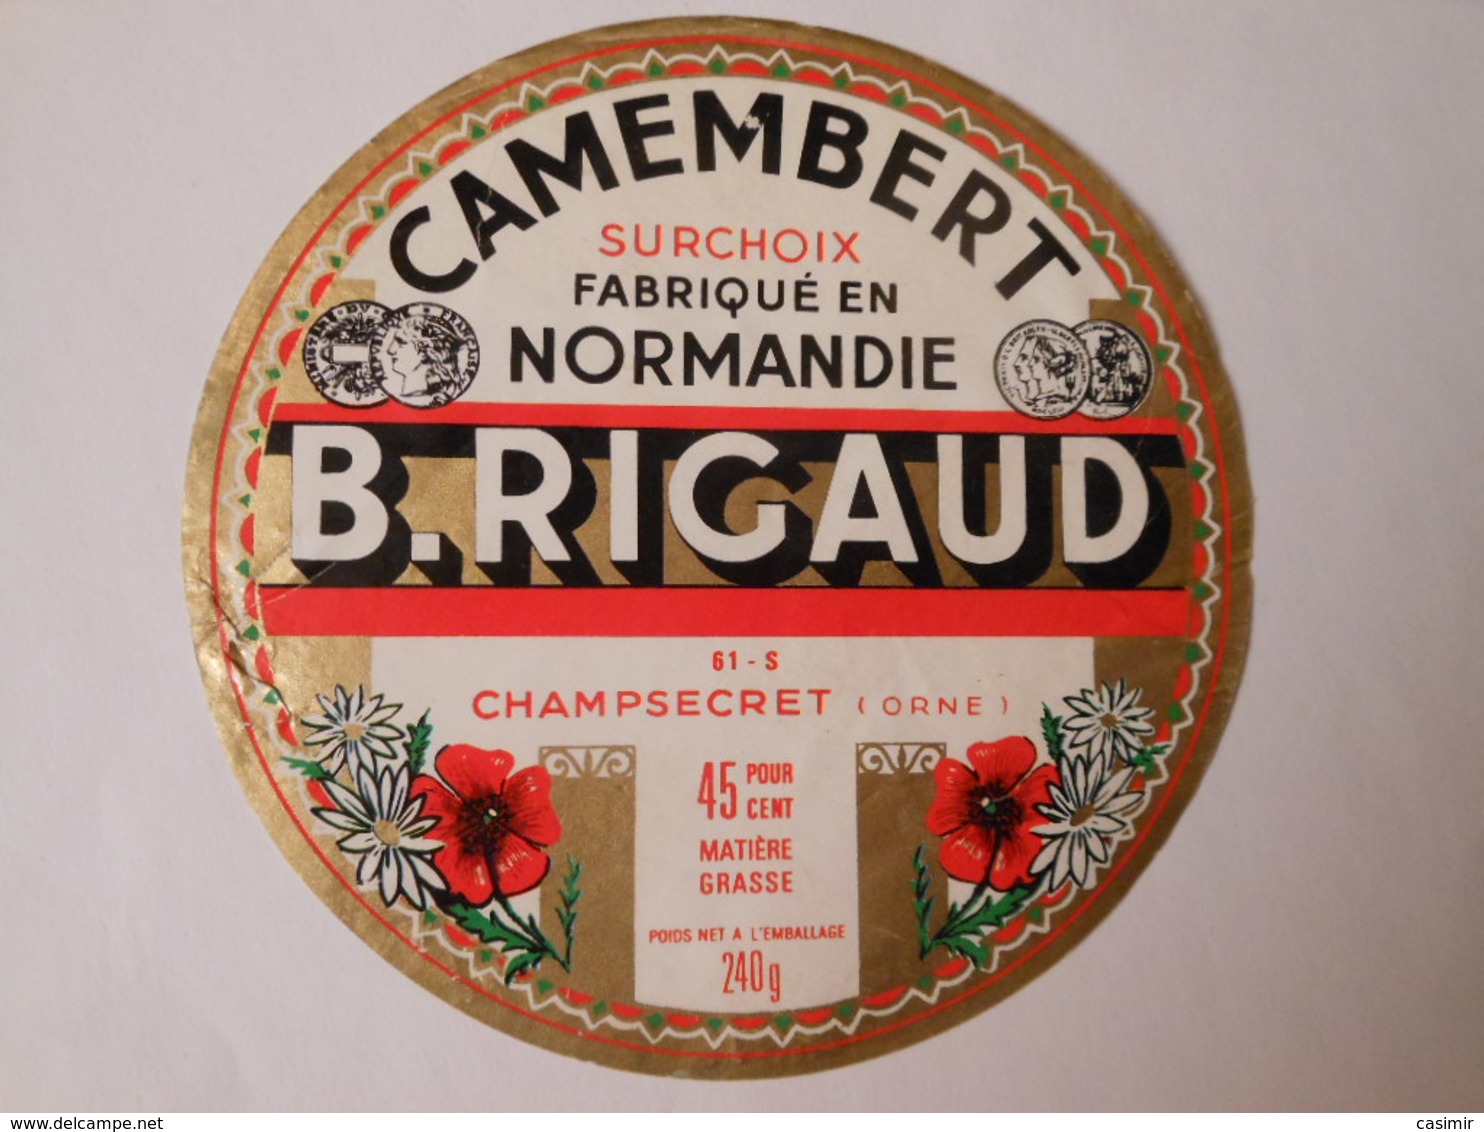 A-61296c - Etiquette De Fromage Camembert RIGAUD à CHAMPSECRET 61-S Orne - Cheese